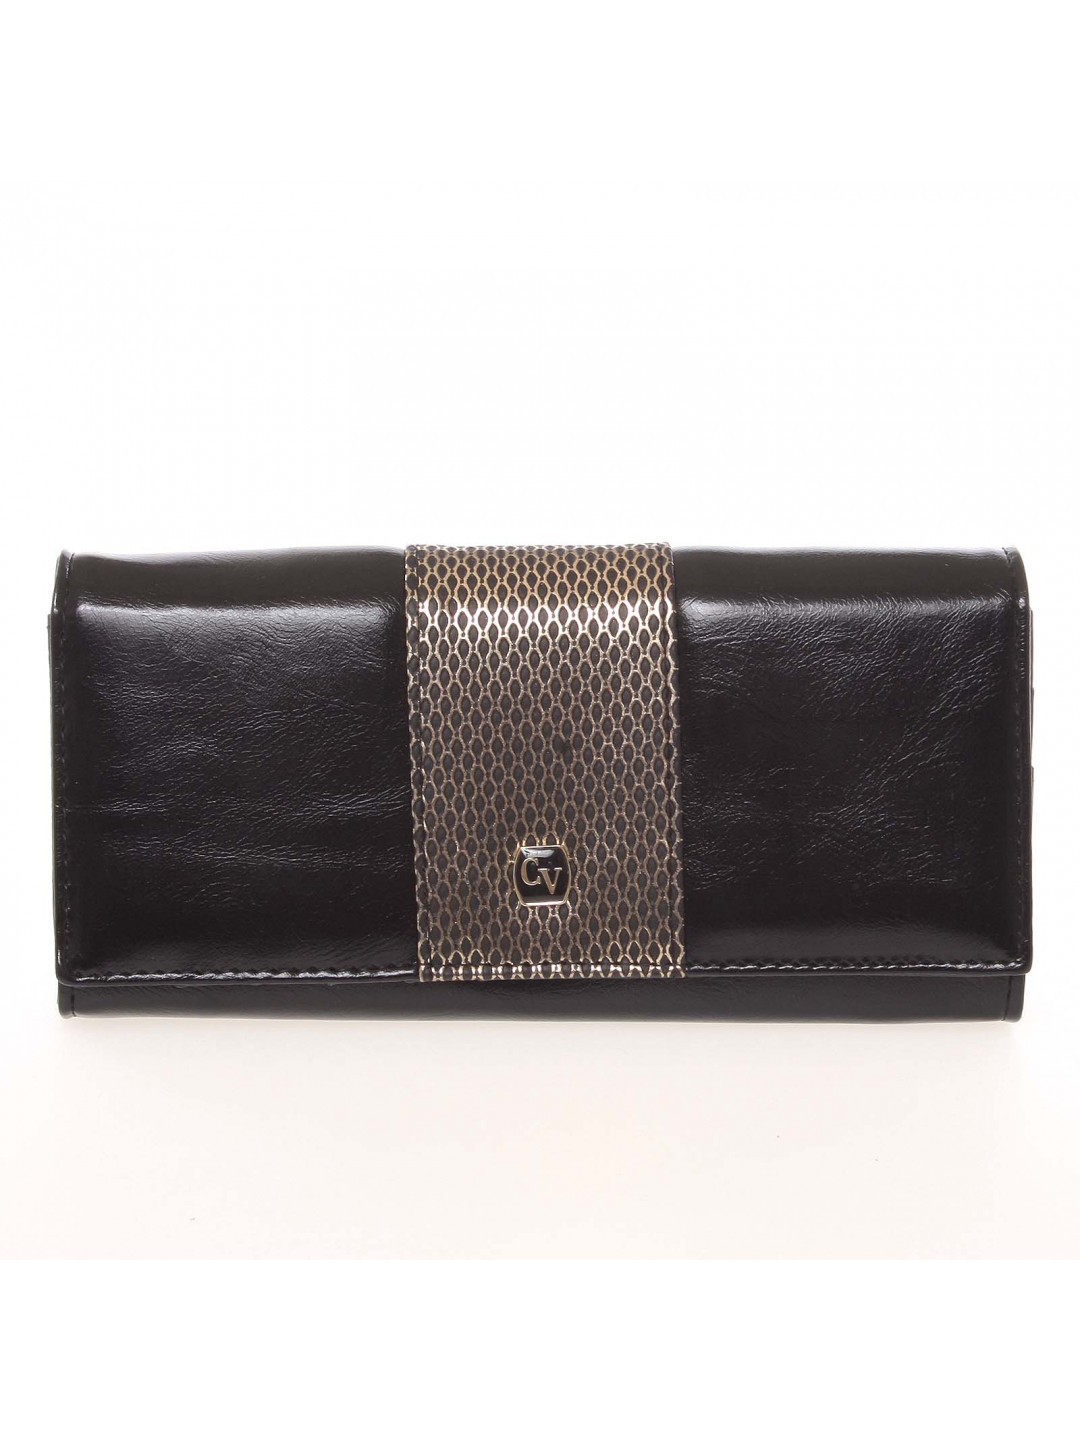 Originální dámská peněženka Cavaldi 4T černá